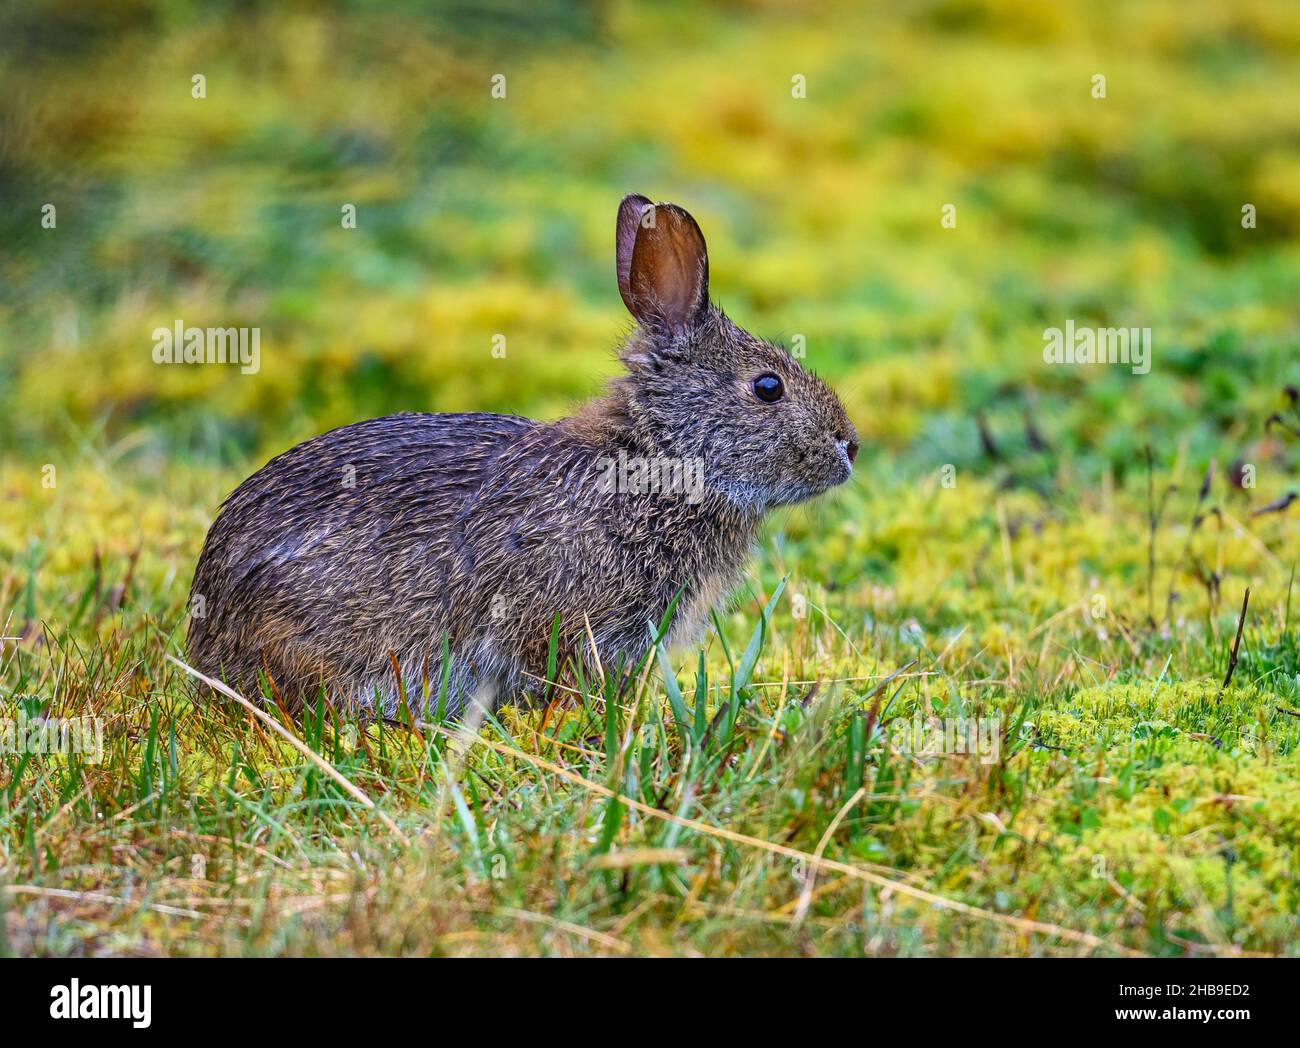 Ein Andentapeti (Sylvilagus andinus), oder Andencottontail, ist ein Kaninchen, das in den Paramos der hohen Anden lebt. Cajas National Park, Ecuador. Stockfoto